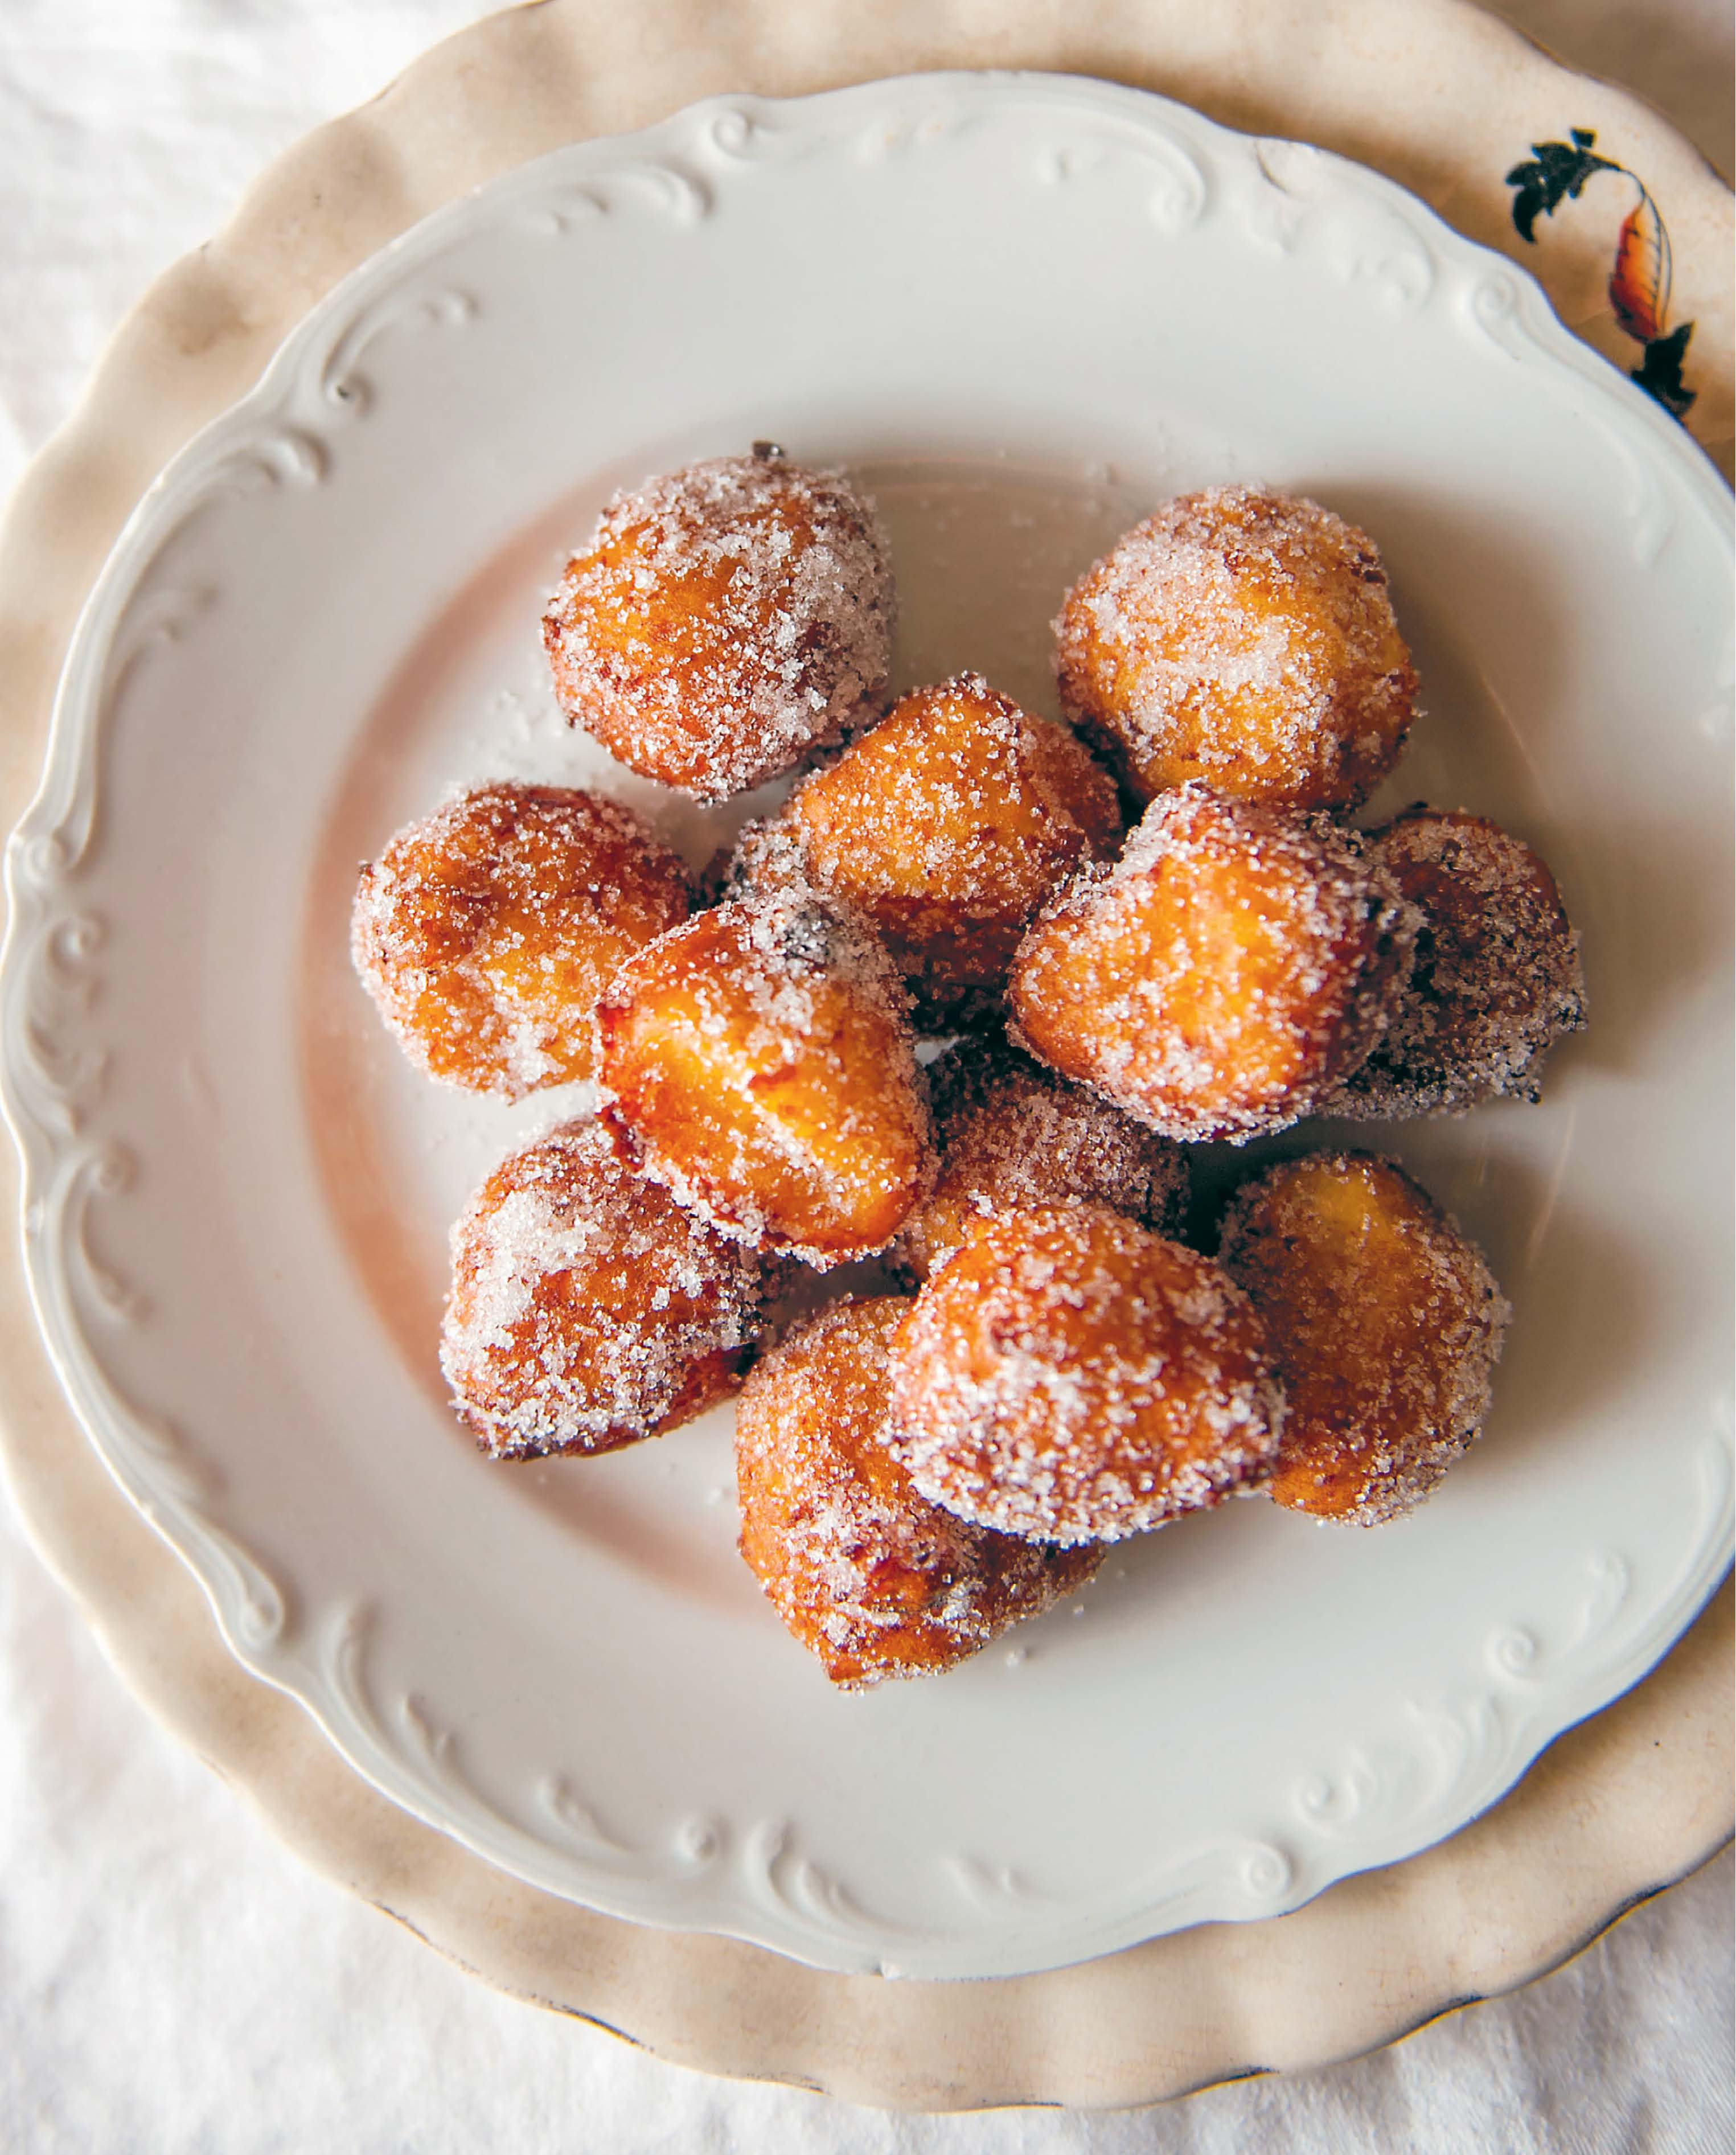 Little doughnuts